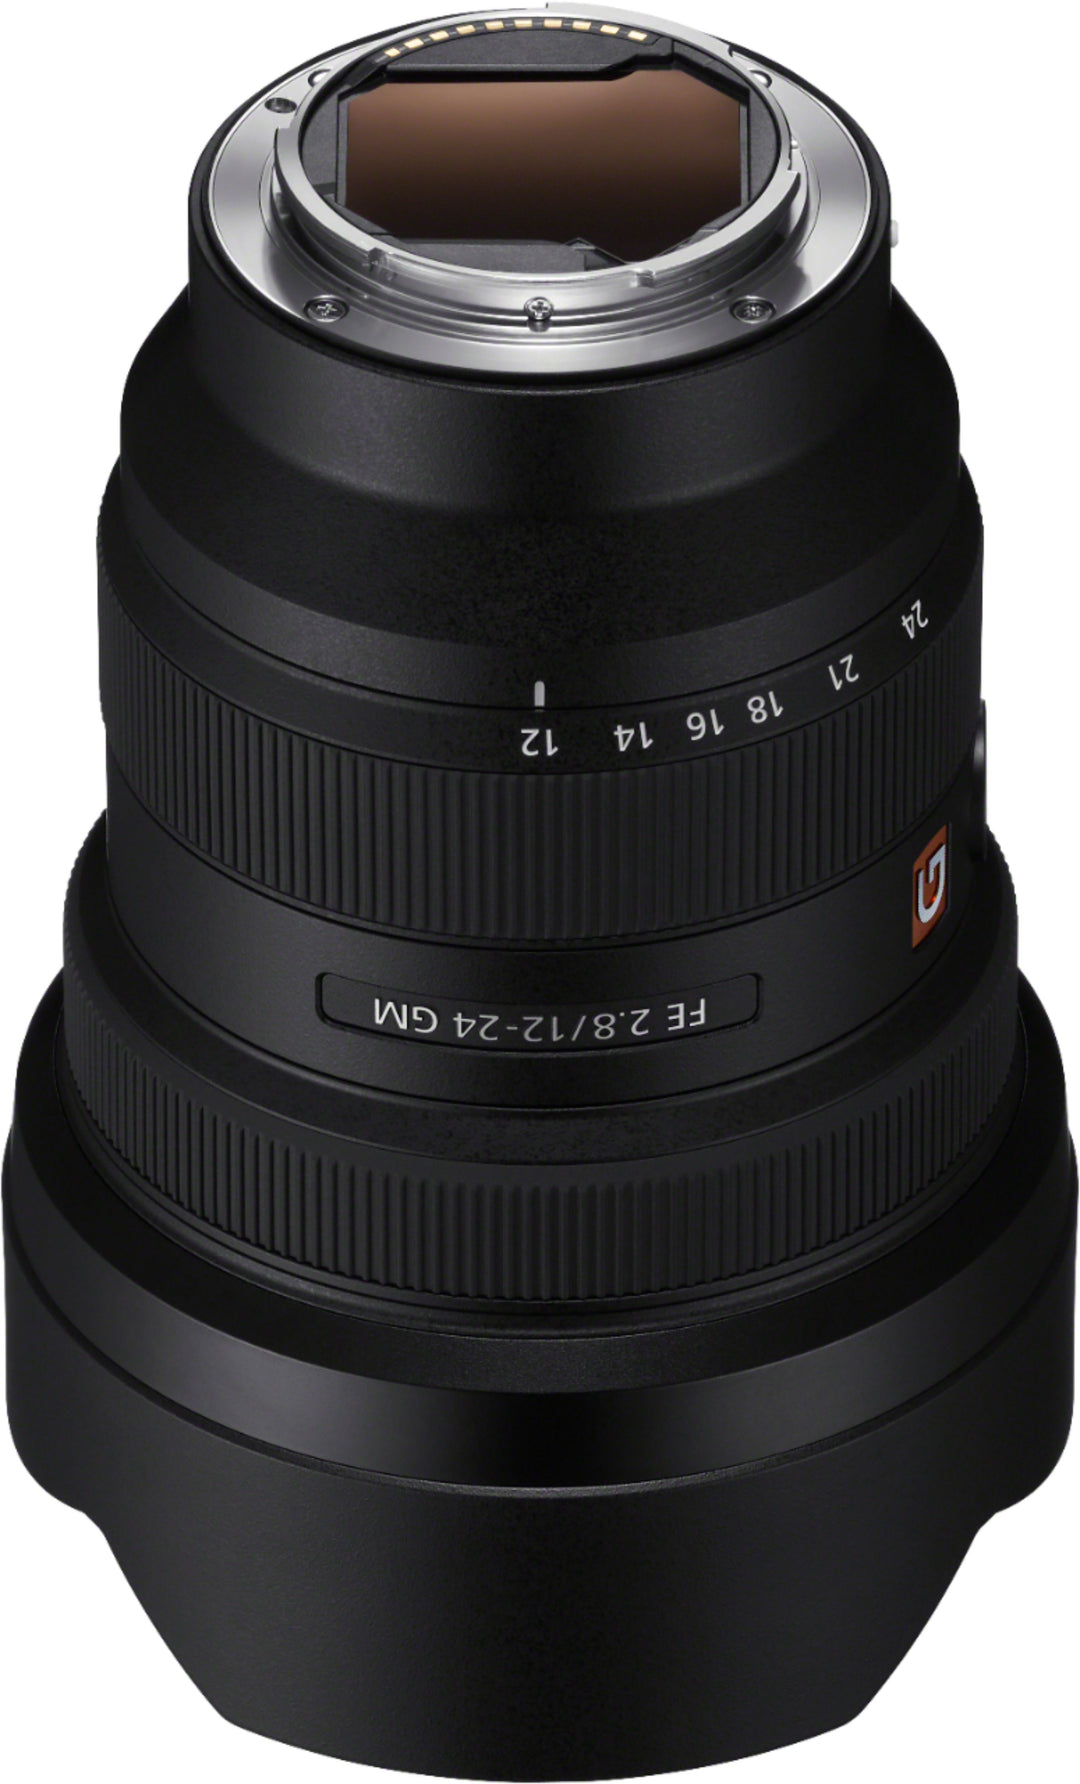 Sony - FE 12-24mm F2.8 G MASTER Full-frame Constant-aperture Ultra-wide Zoom Lens - Black_5